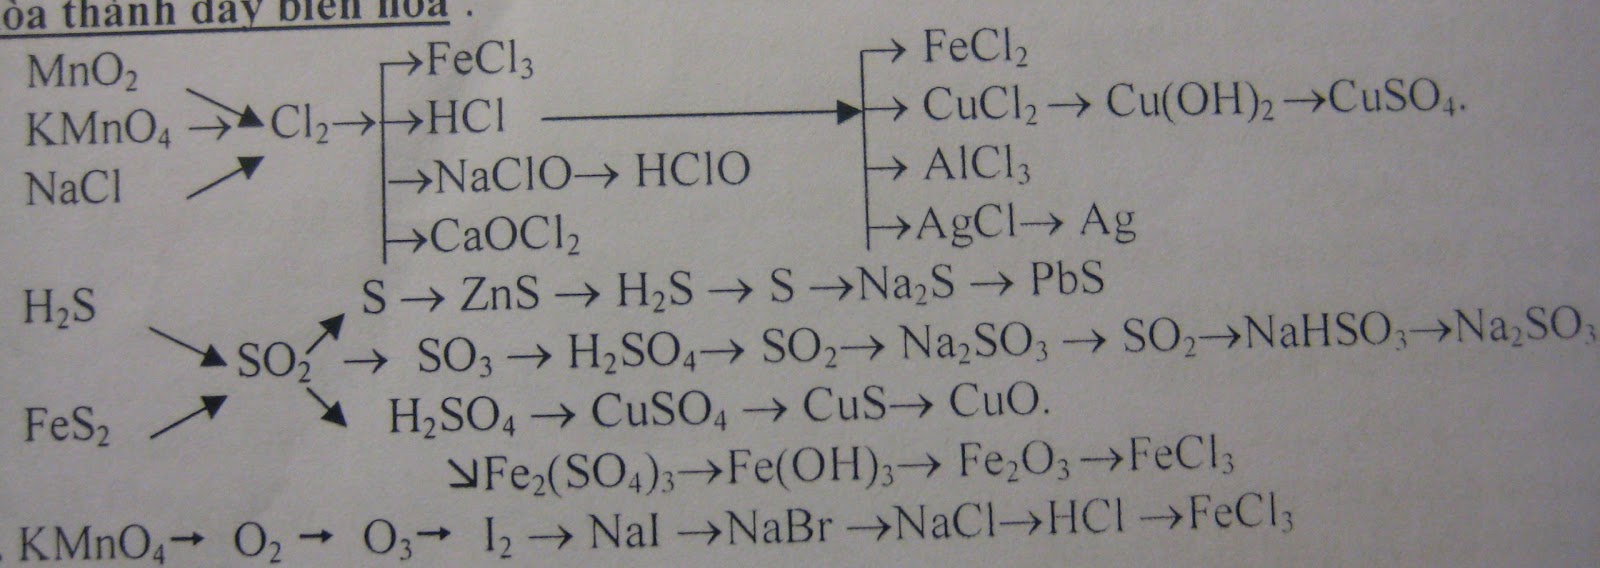 Mno2 ba oh 2. Fecl2 kmno4 h2o. Kmno4 HCL ОВР. NACL kmno4 h2o. ОВР реакции HCL + kmno4.